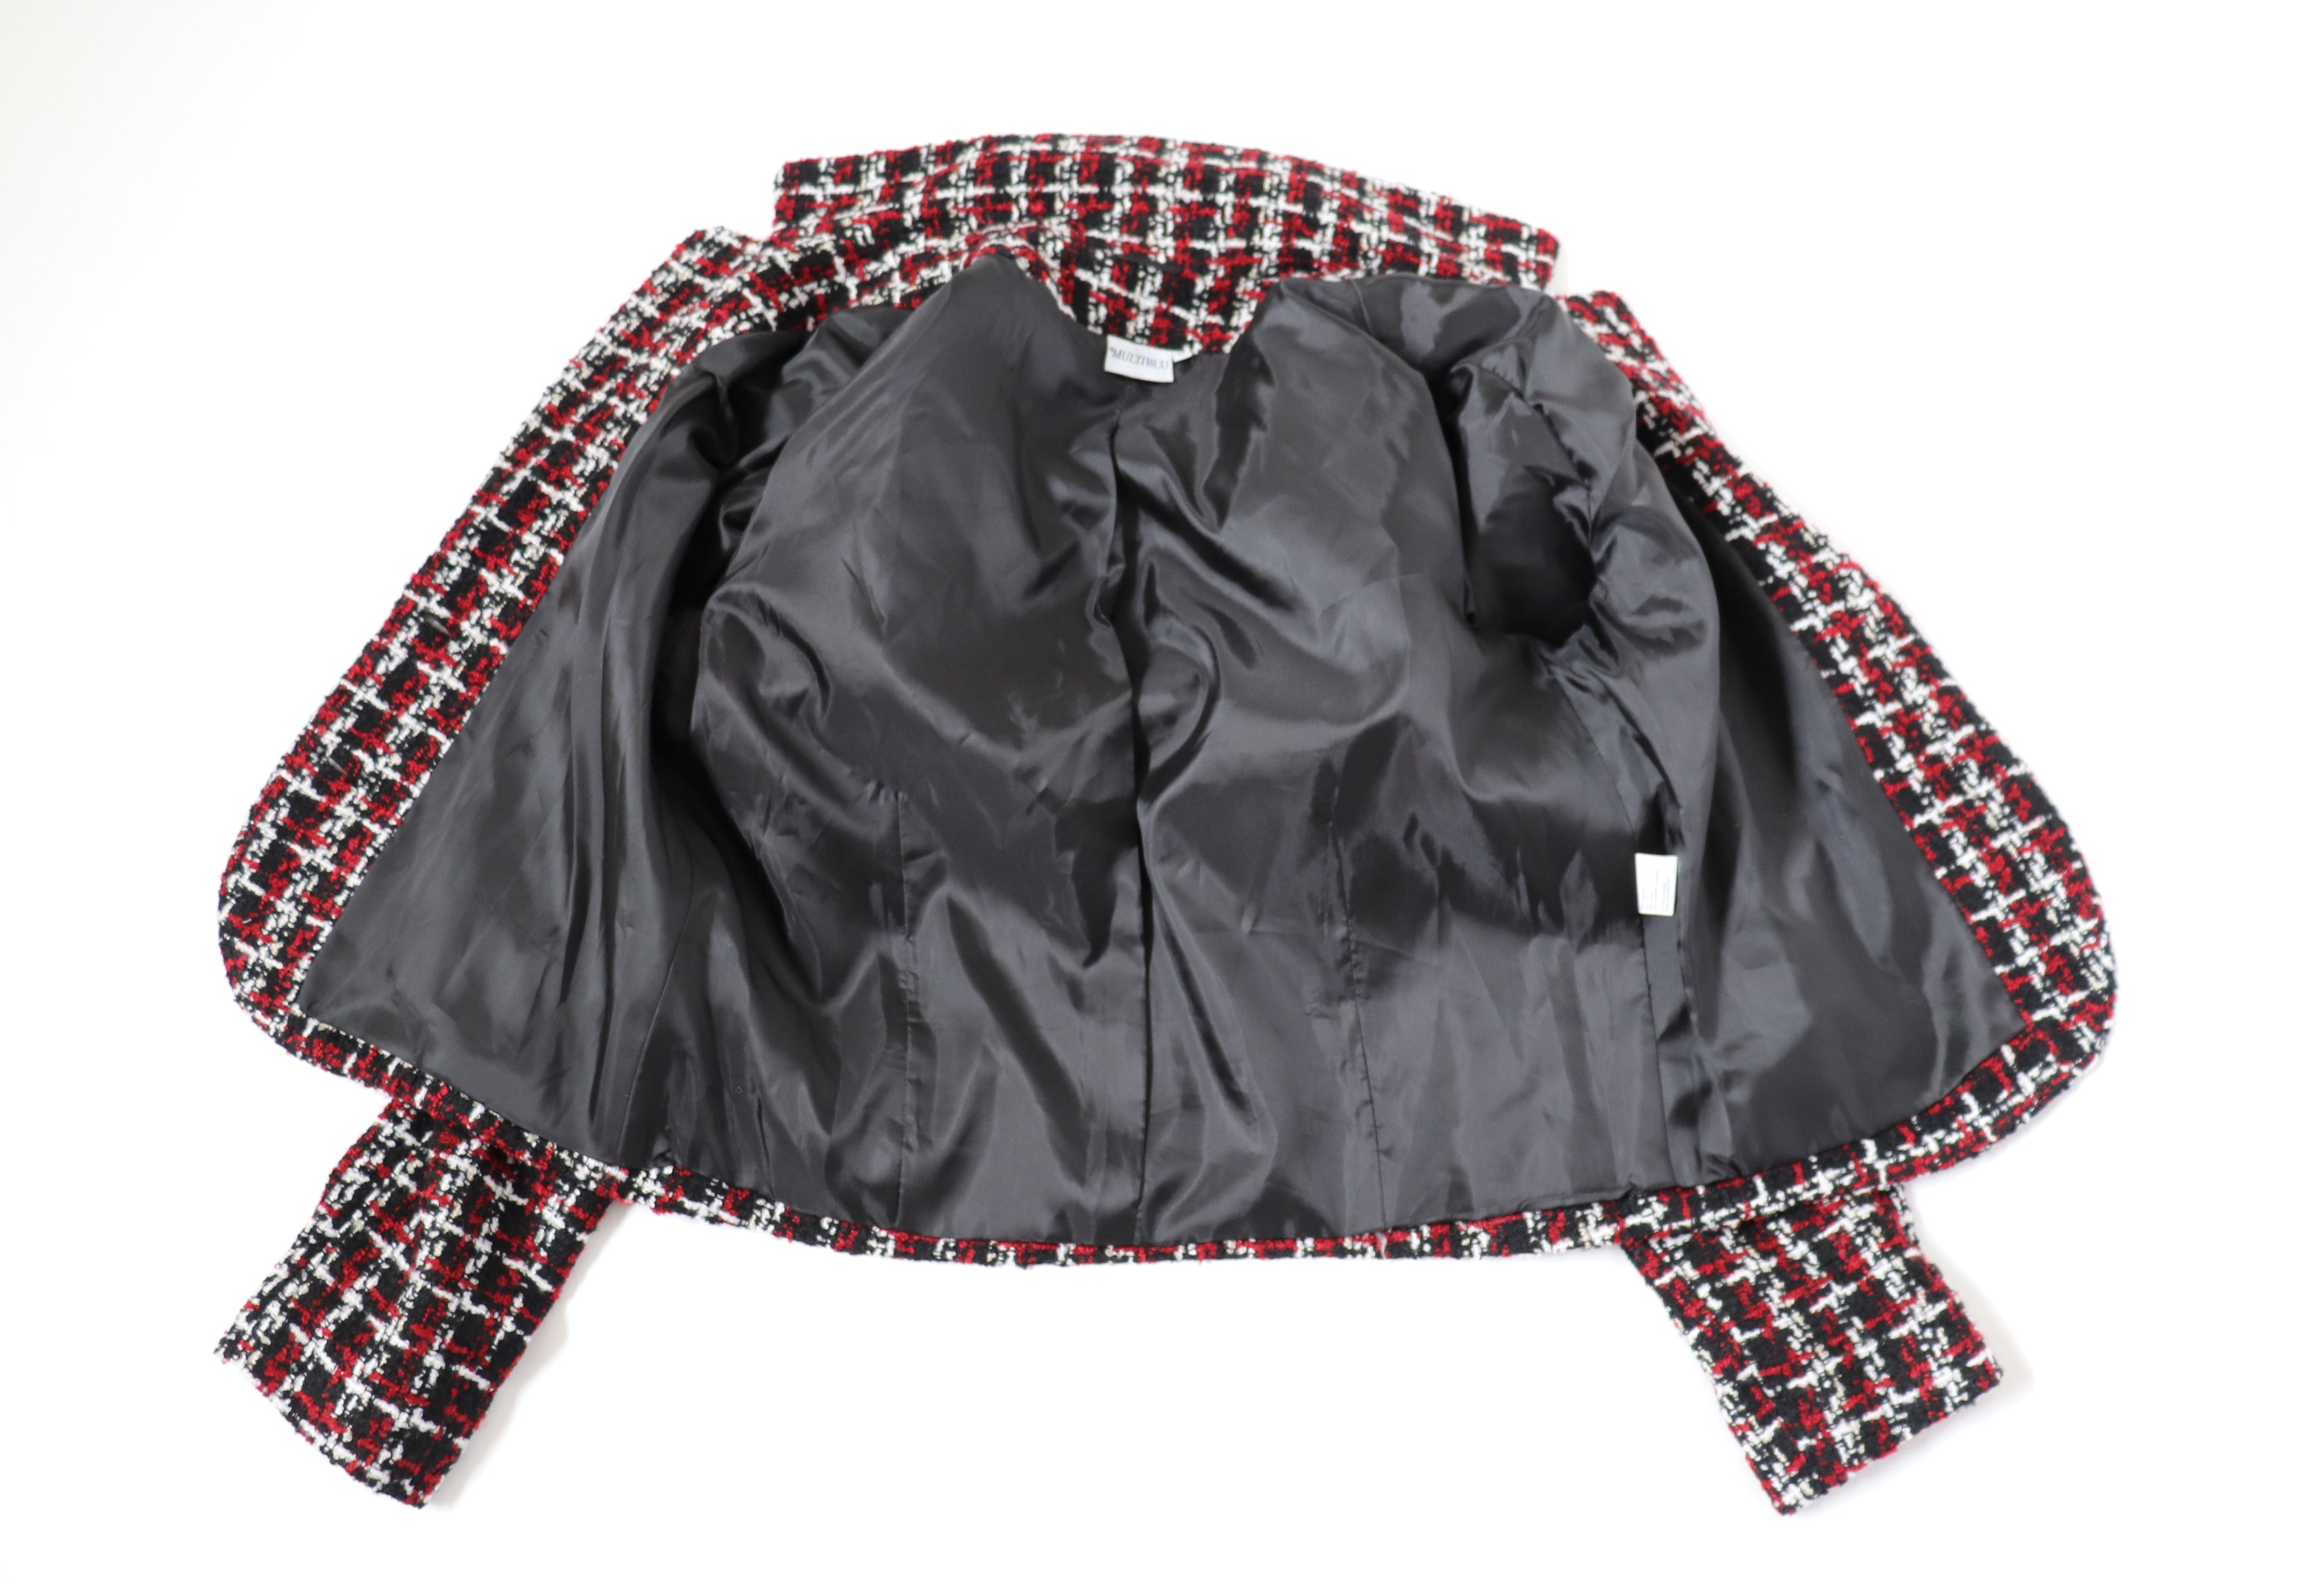 Boucle Tweed Jacket - MultiBlu - Vintage 1990s - Burgundy / Black - M / UK 12